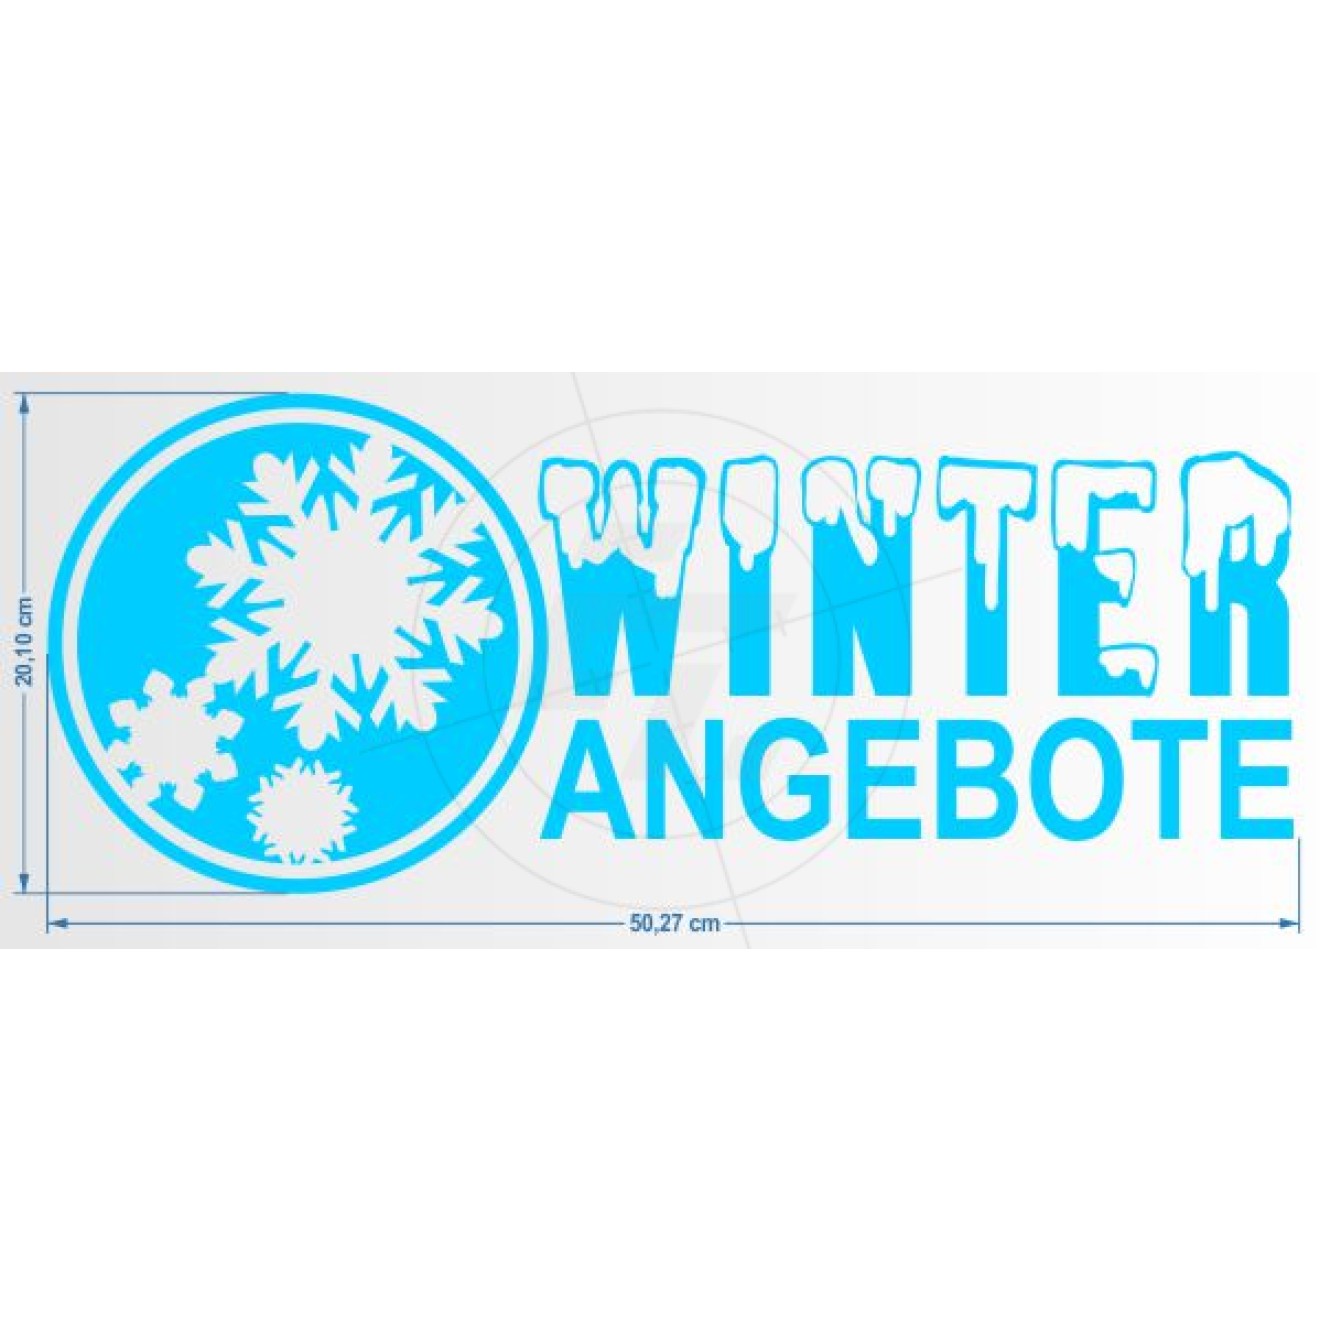 Winterangebote, Banner Querformat